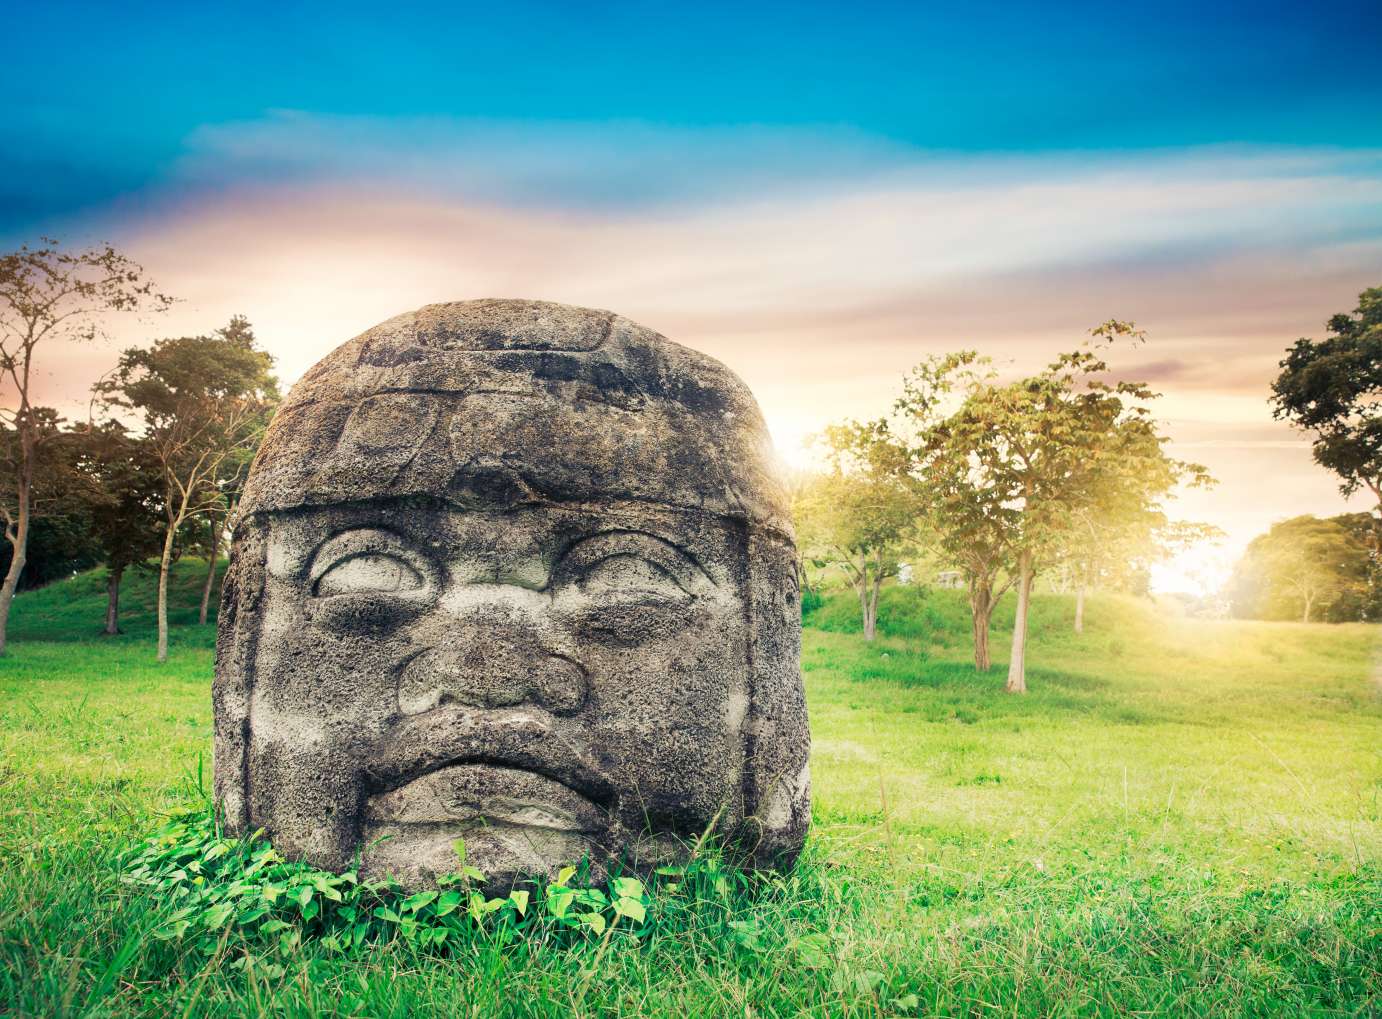 "سر سنگی" غیرقابل توضیح گواتمالا: شواهدی از وجود یک تمدن فرازمینی؟ 2